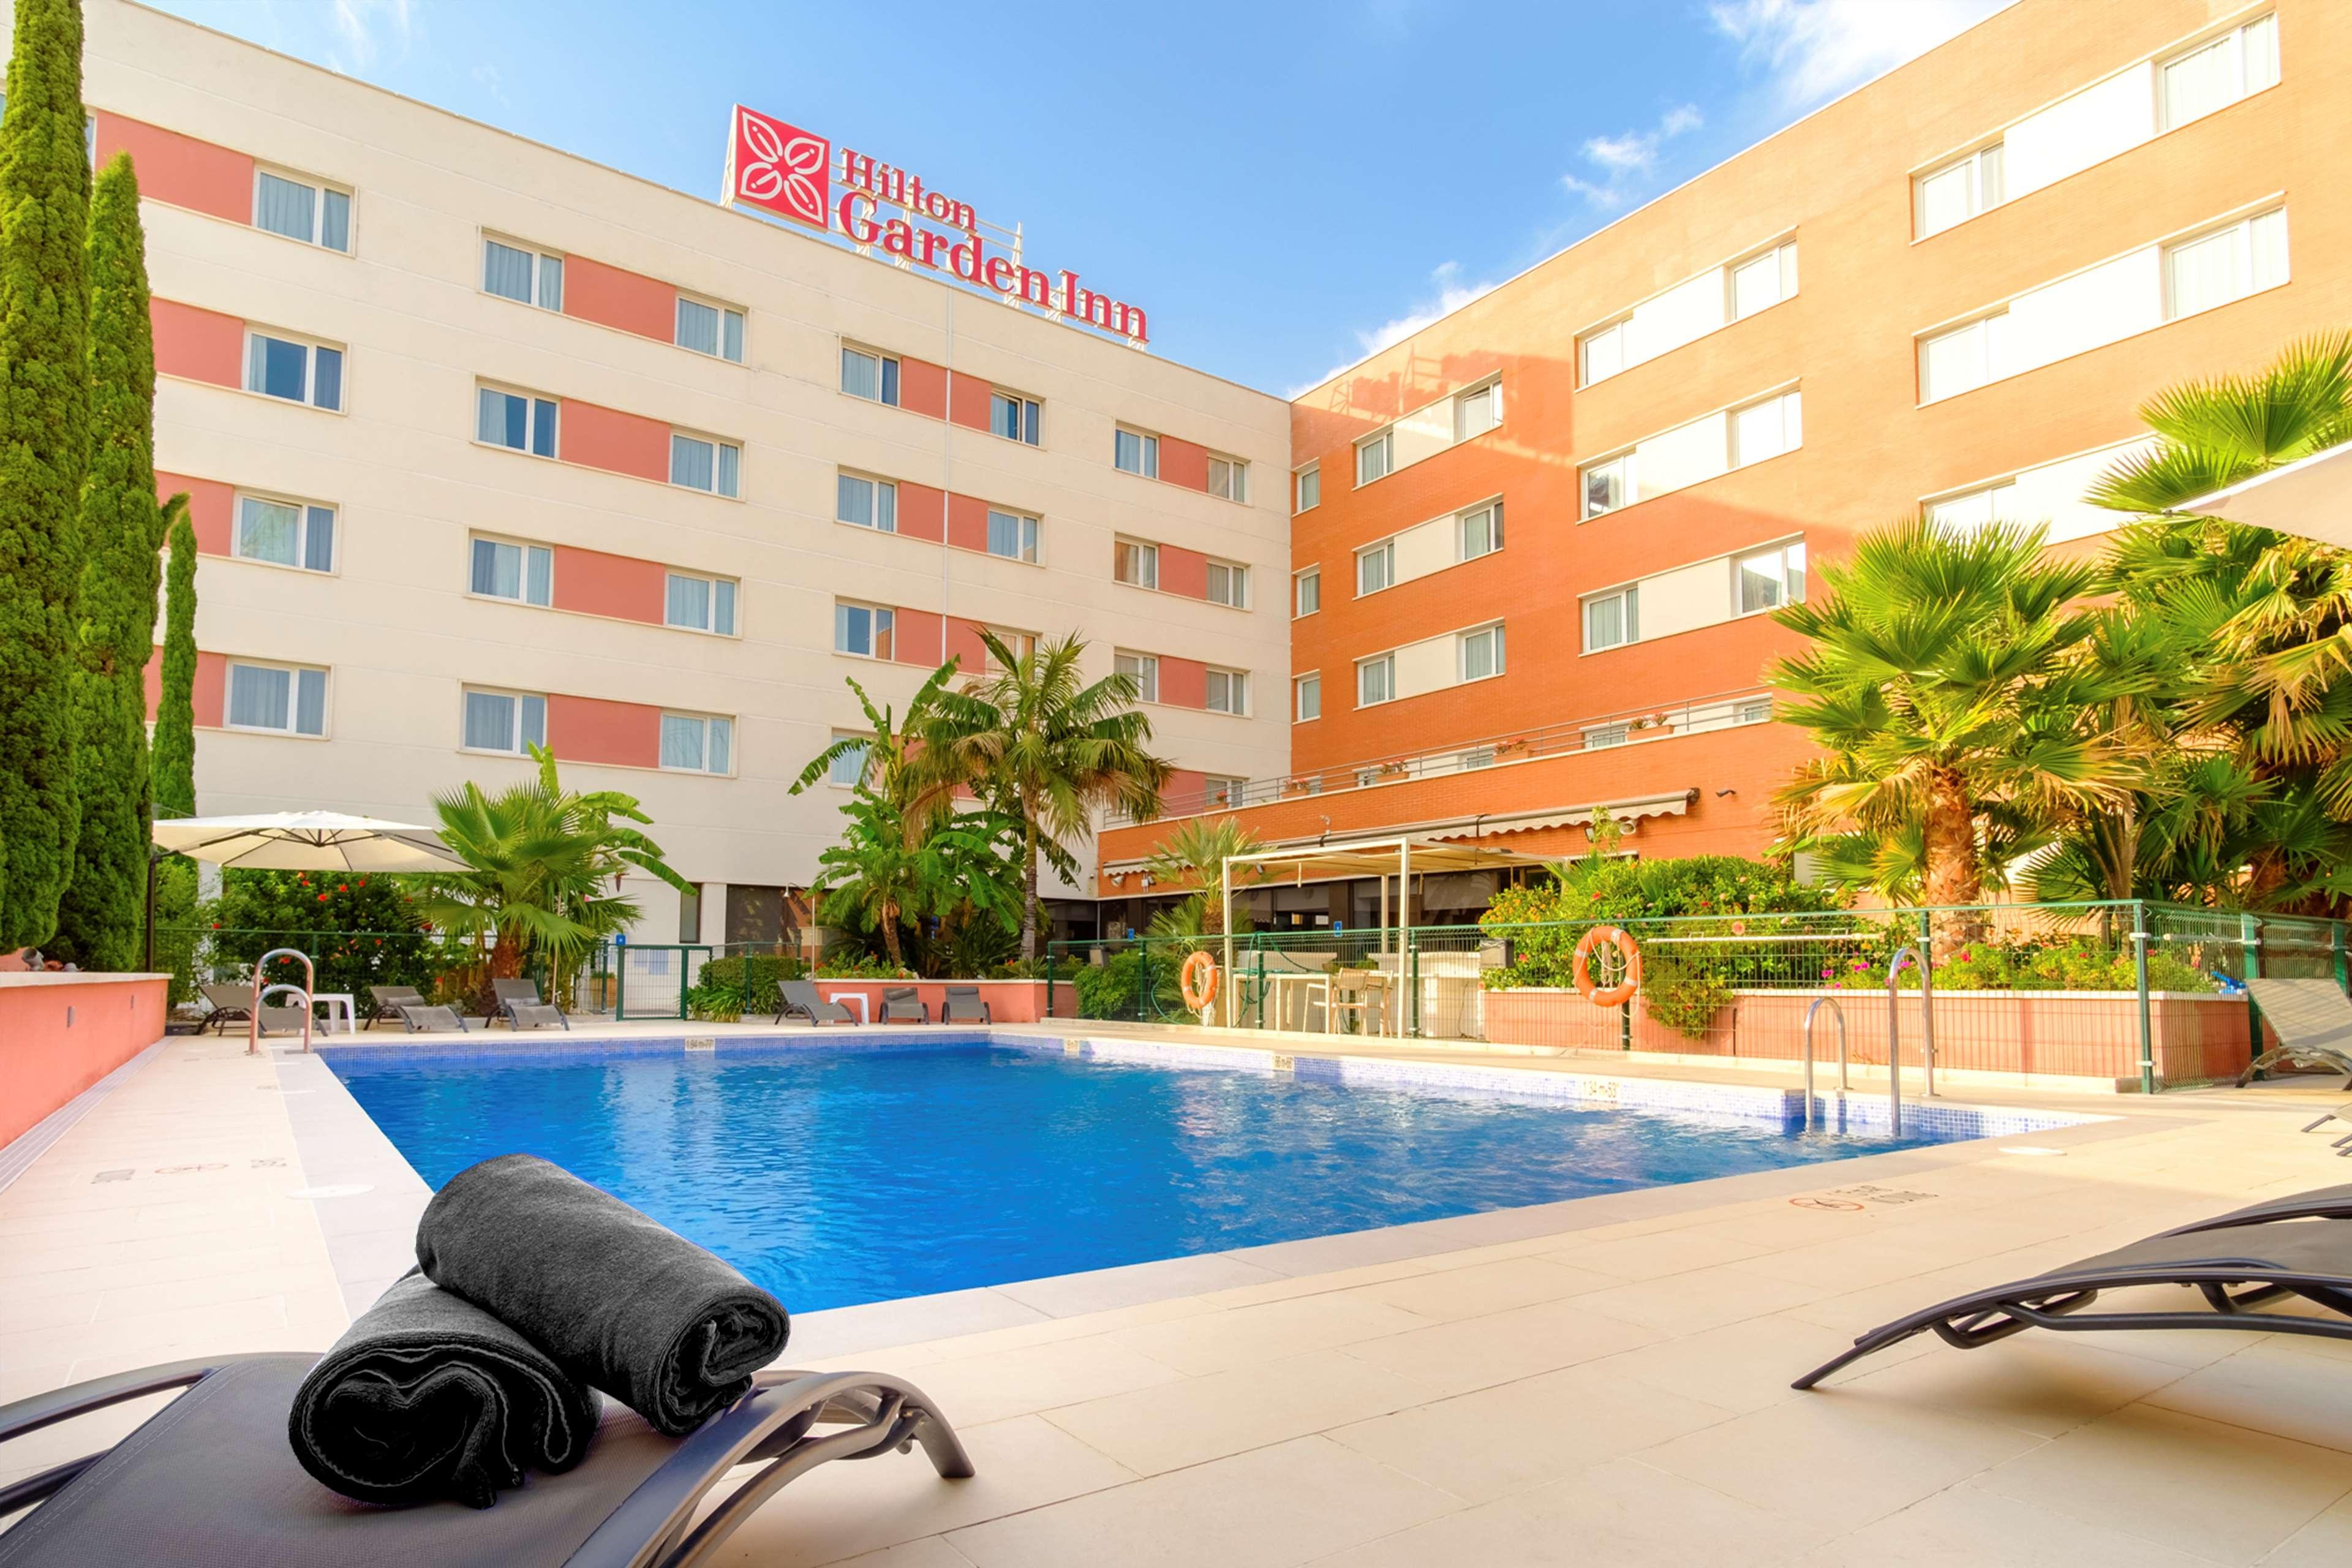 Hilton Garden Inn Malaga image